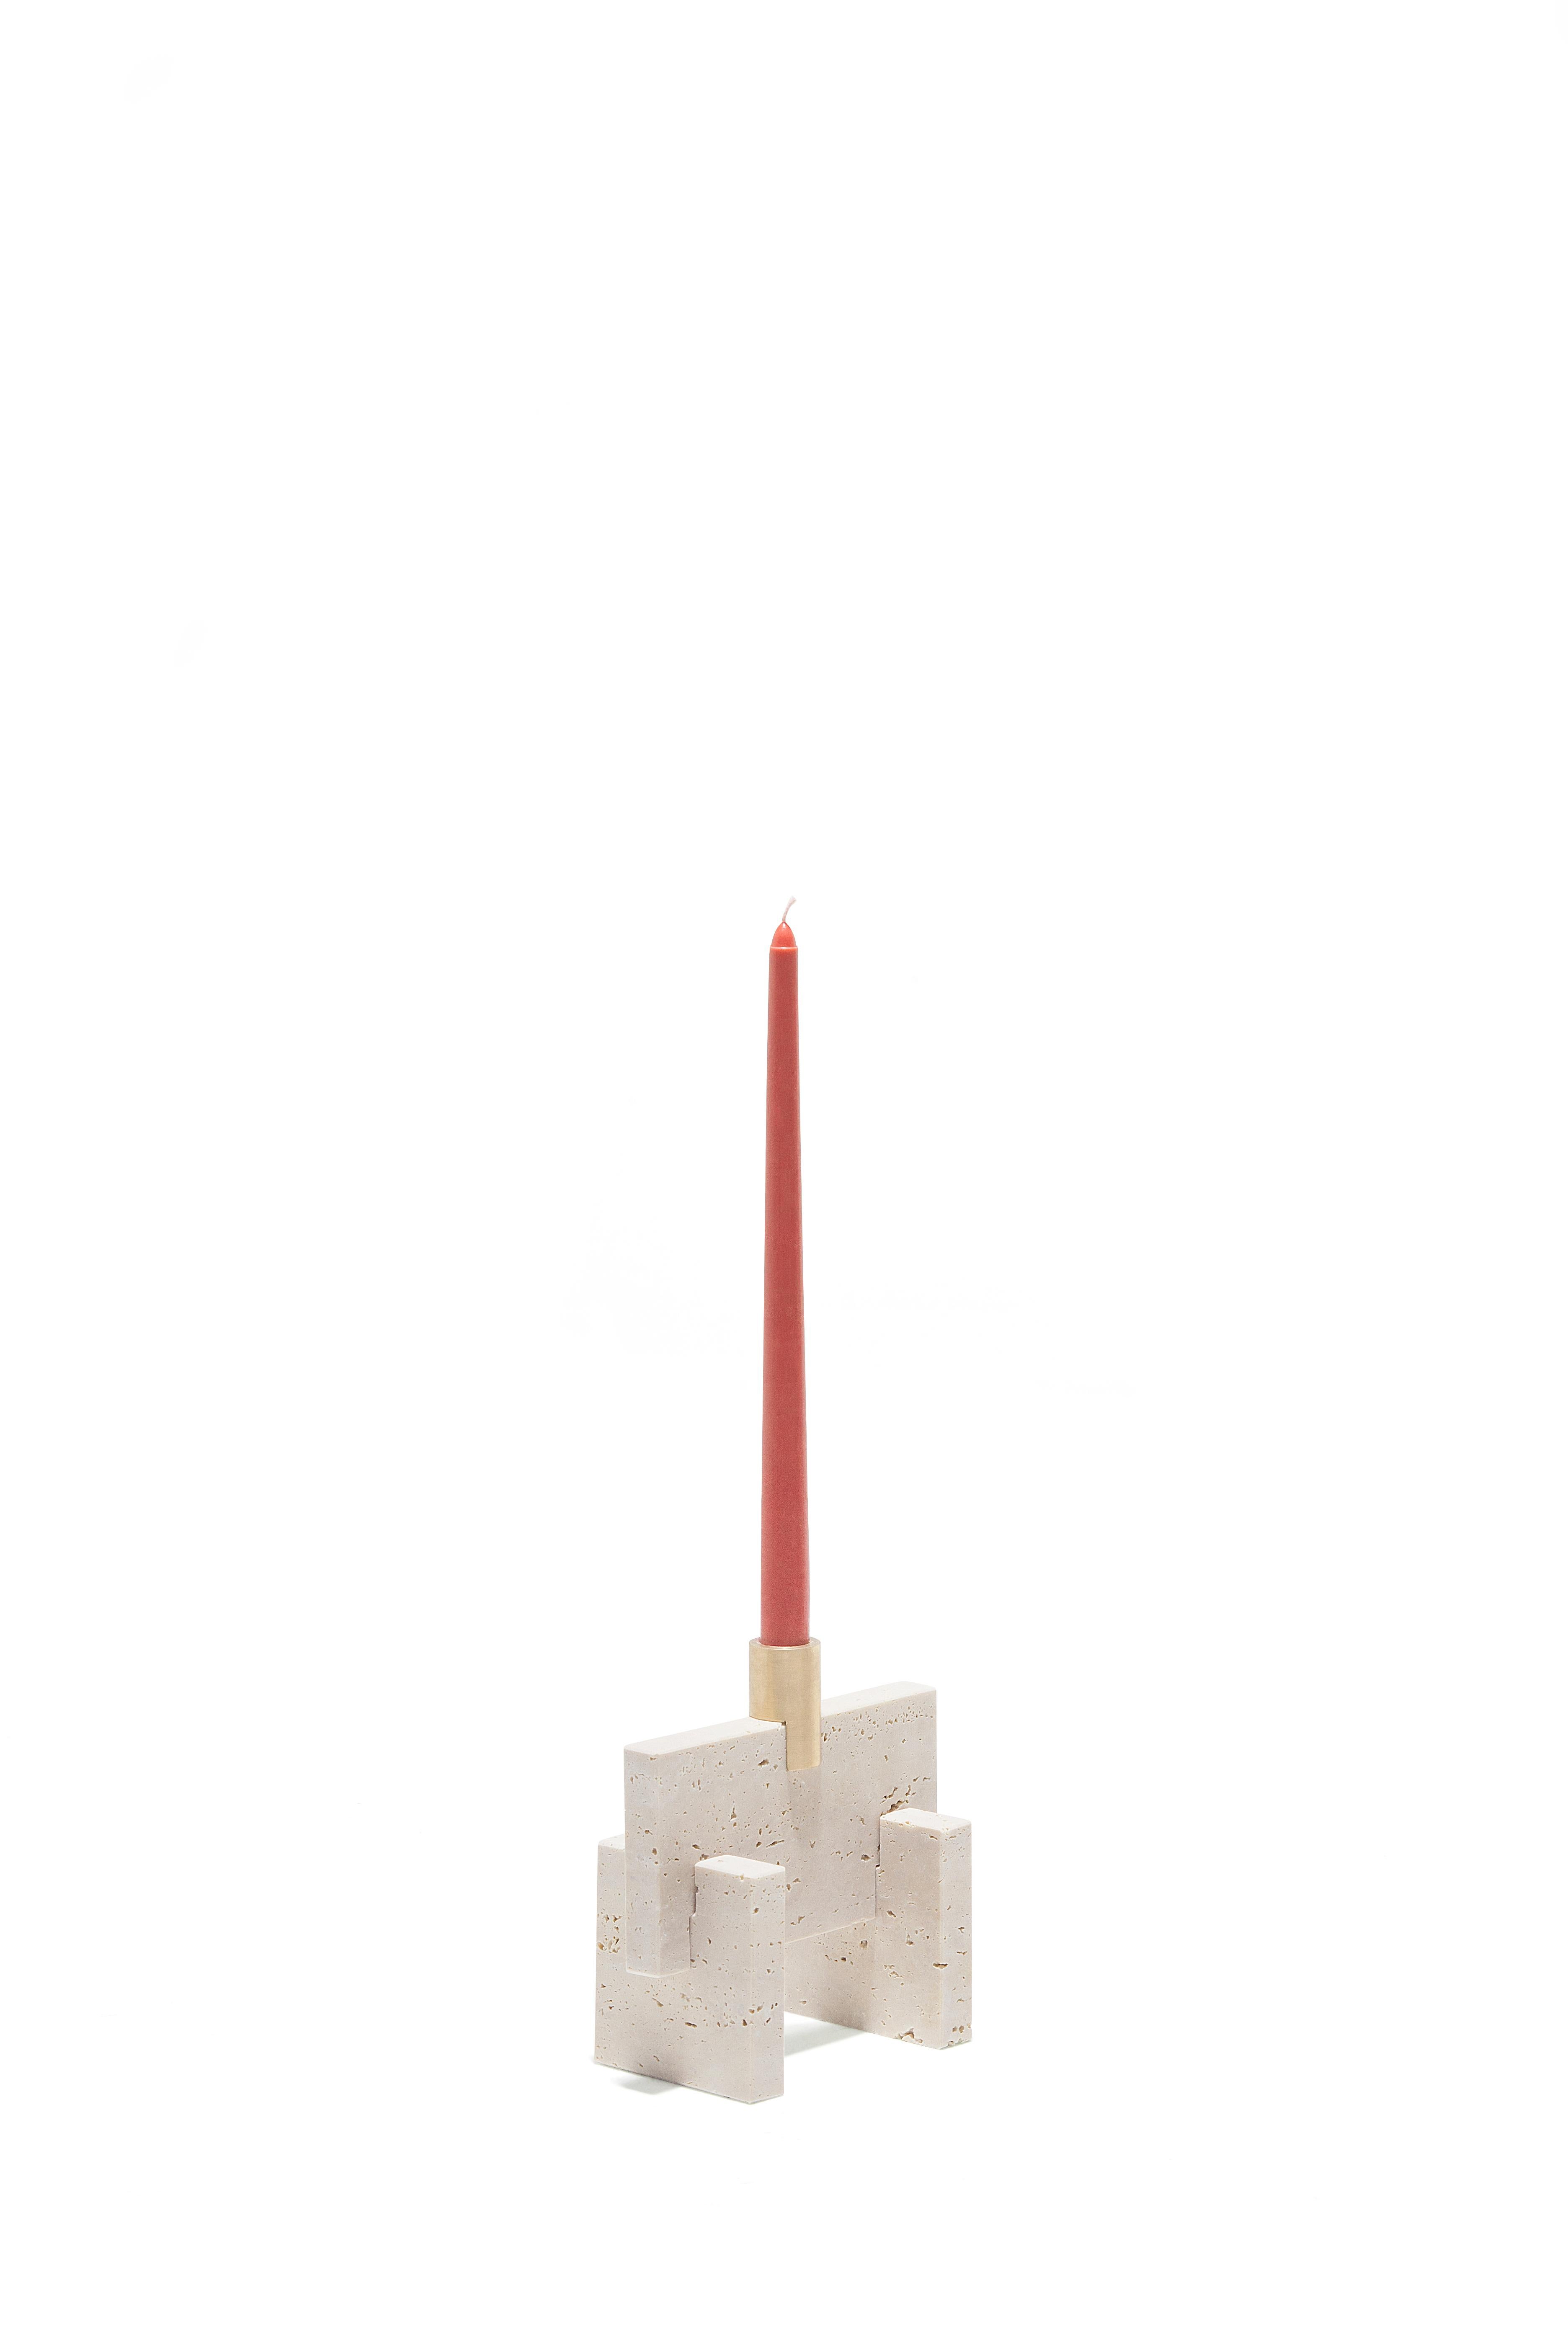 Der Fit Candle One ist ein minimalistischer Kerzenständer aus behandeltem Travertinmarmor. Dieser Kerzenständer besteht aus drei Marmorteilen und einem massiven Messingteil, die alle auf logische und harmonische Weise zusammengesetzt sind.
Josep